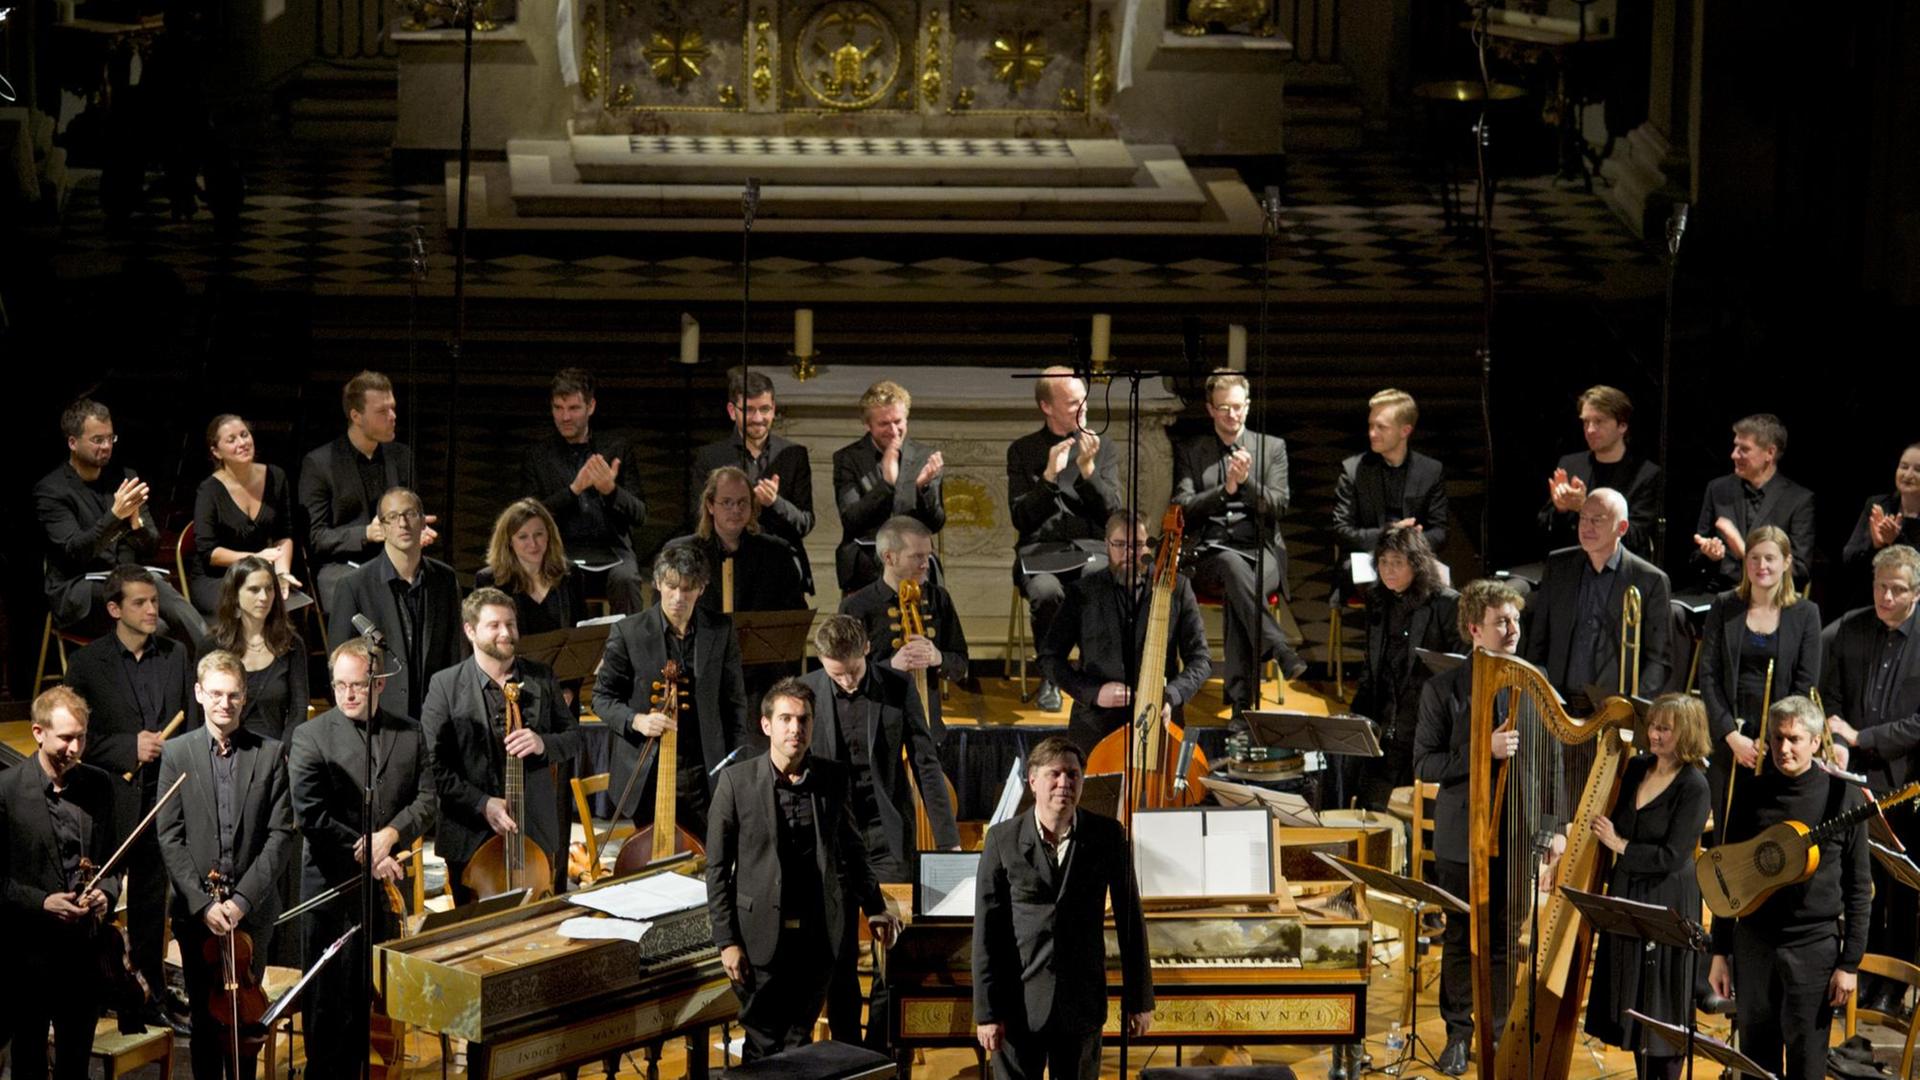 Das Orchester steht mit historischen Instrumenten auf einer Bühne.